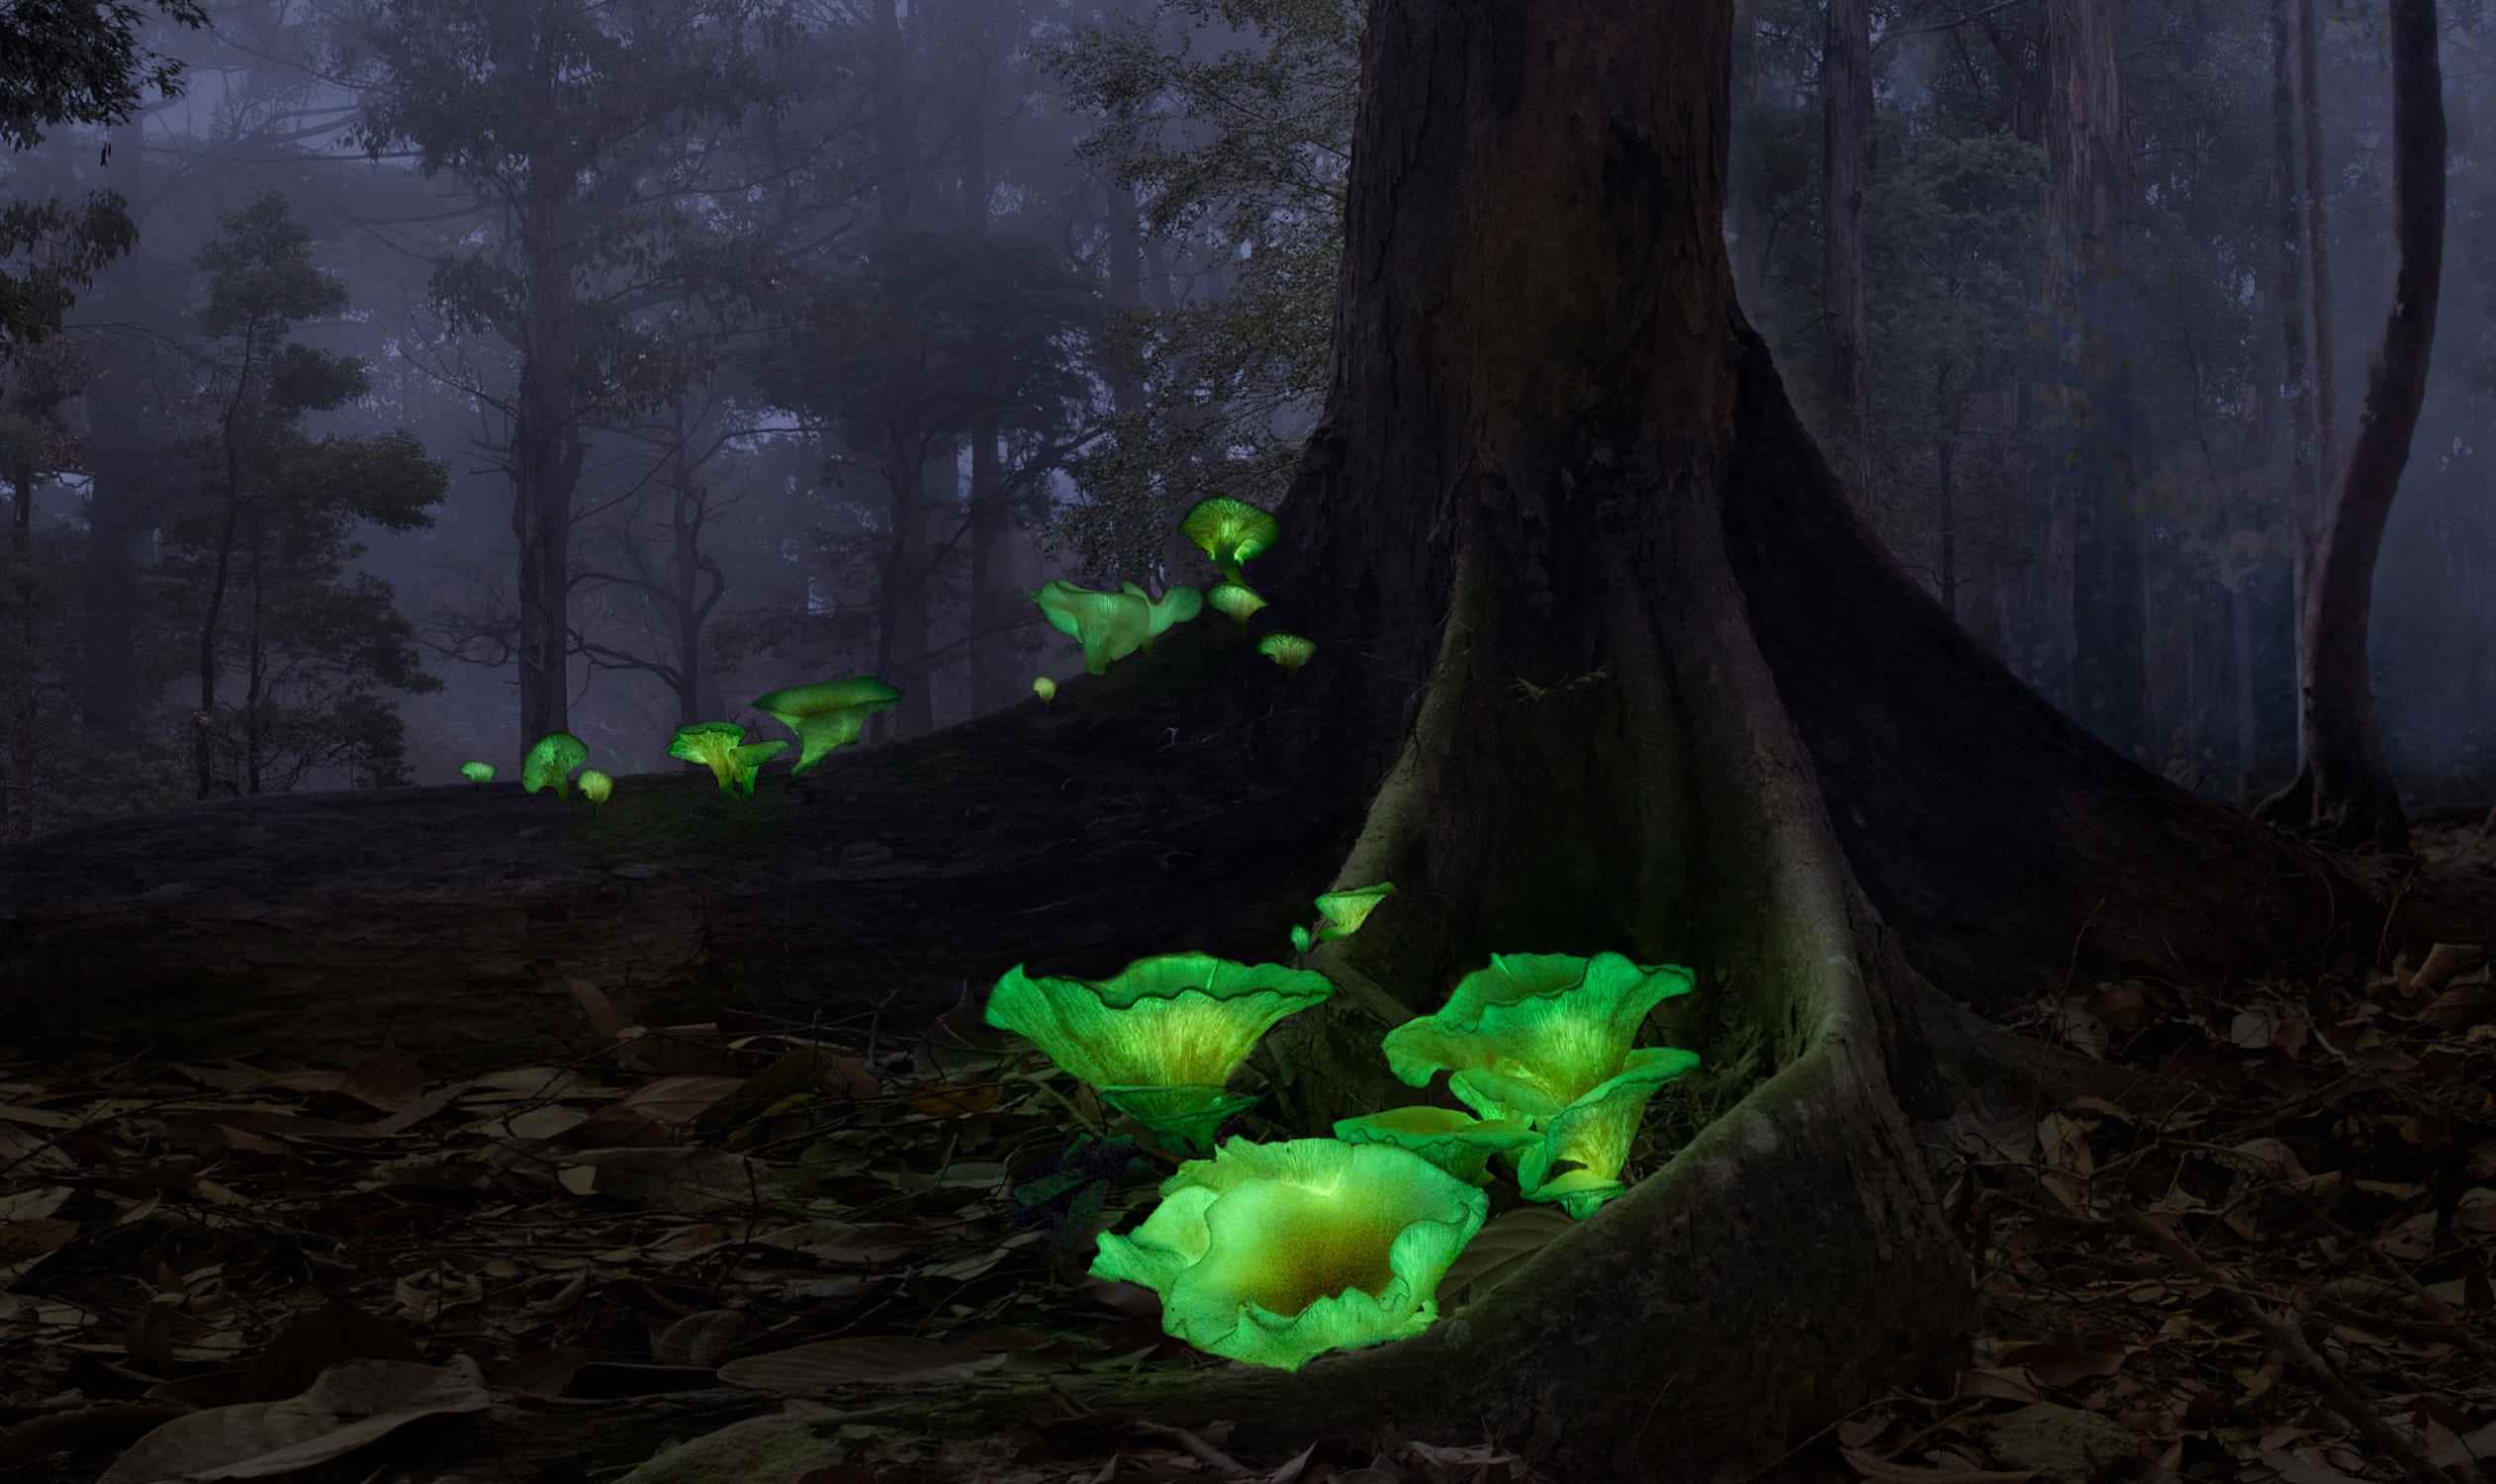 Neongrüne Pilze im dunklen Wald